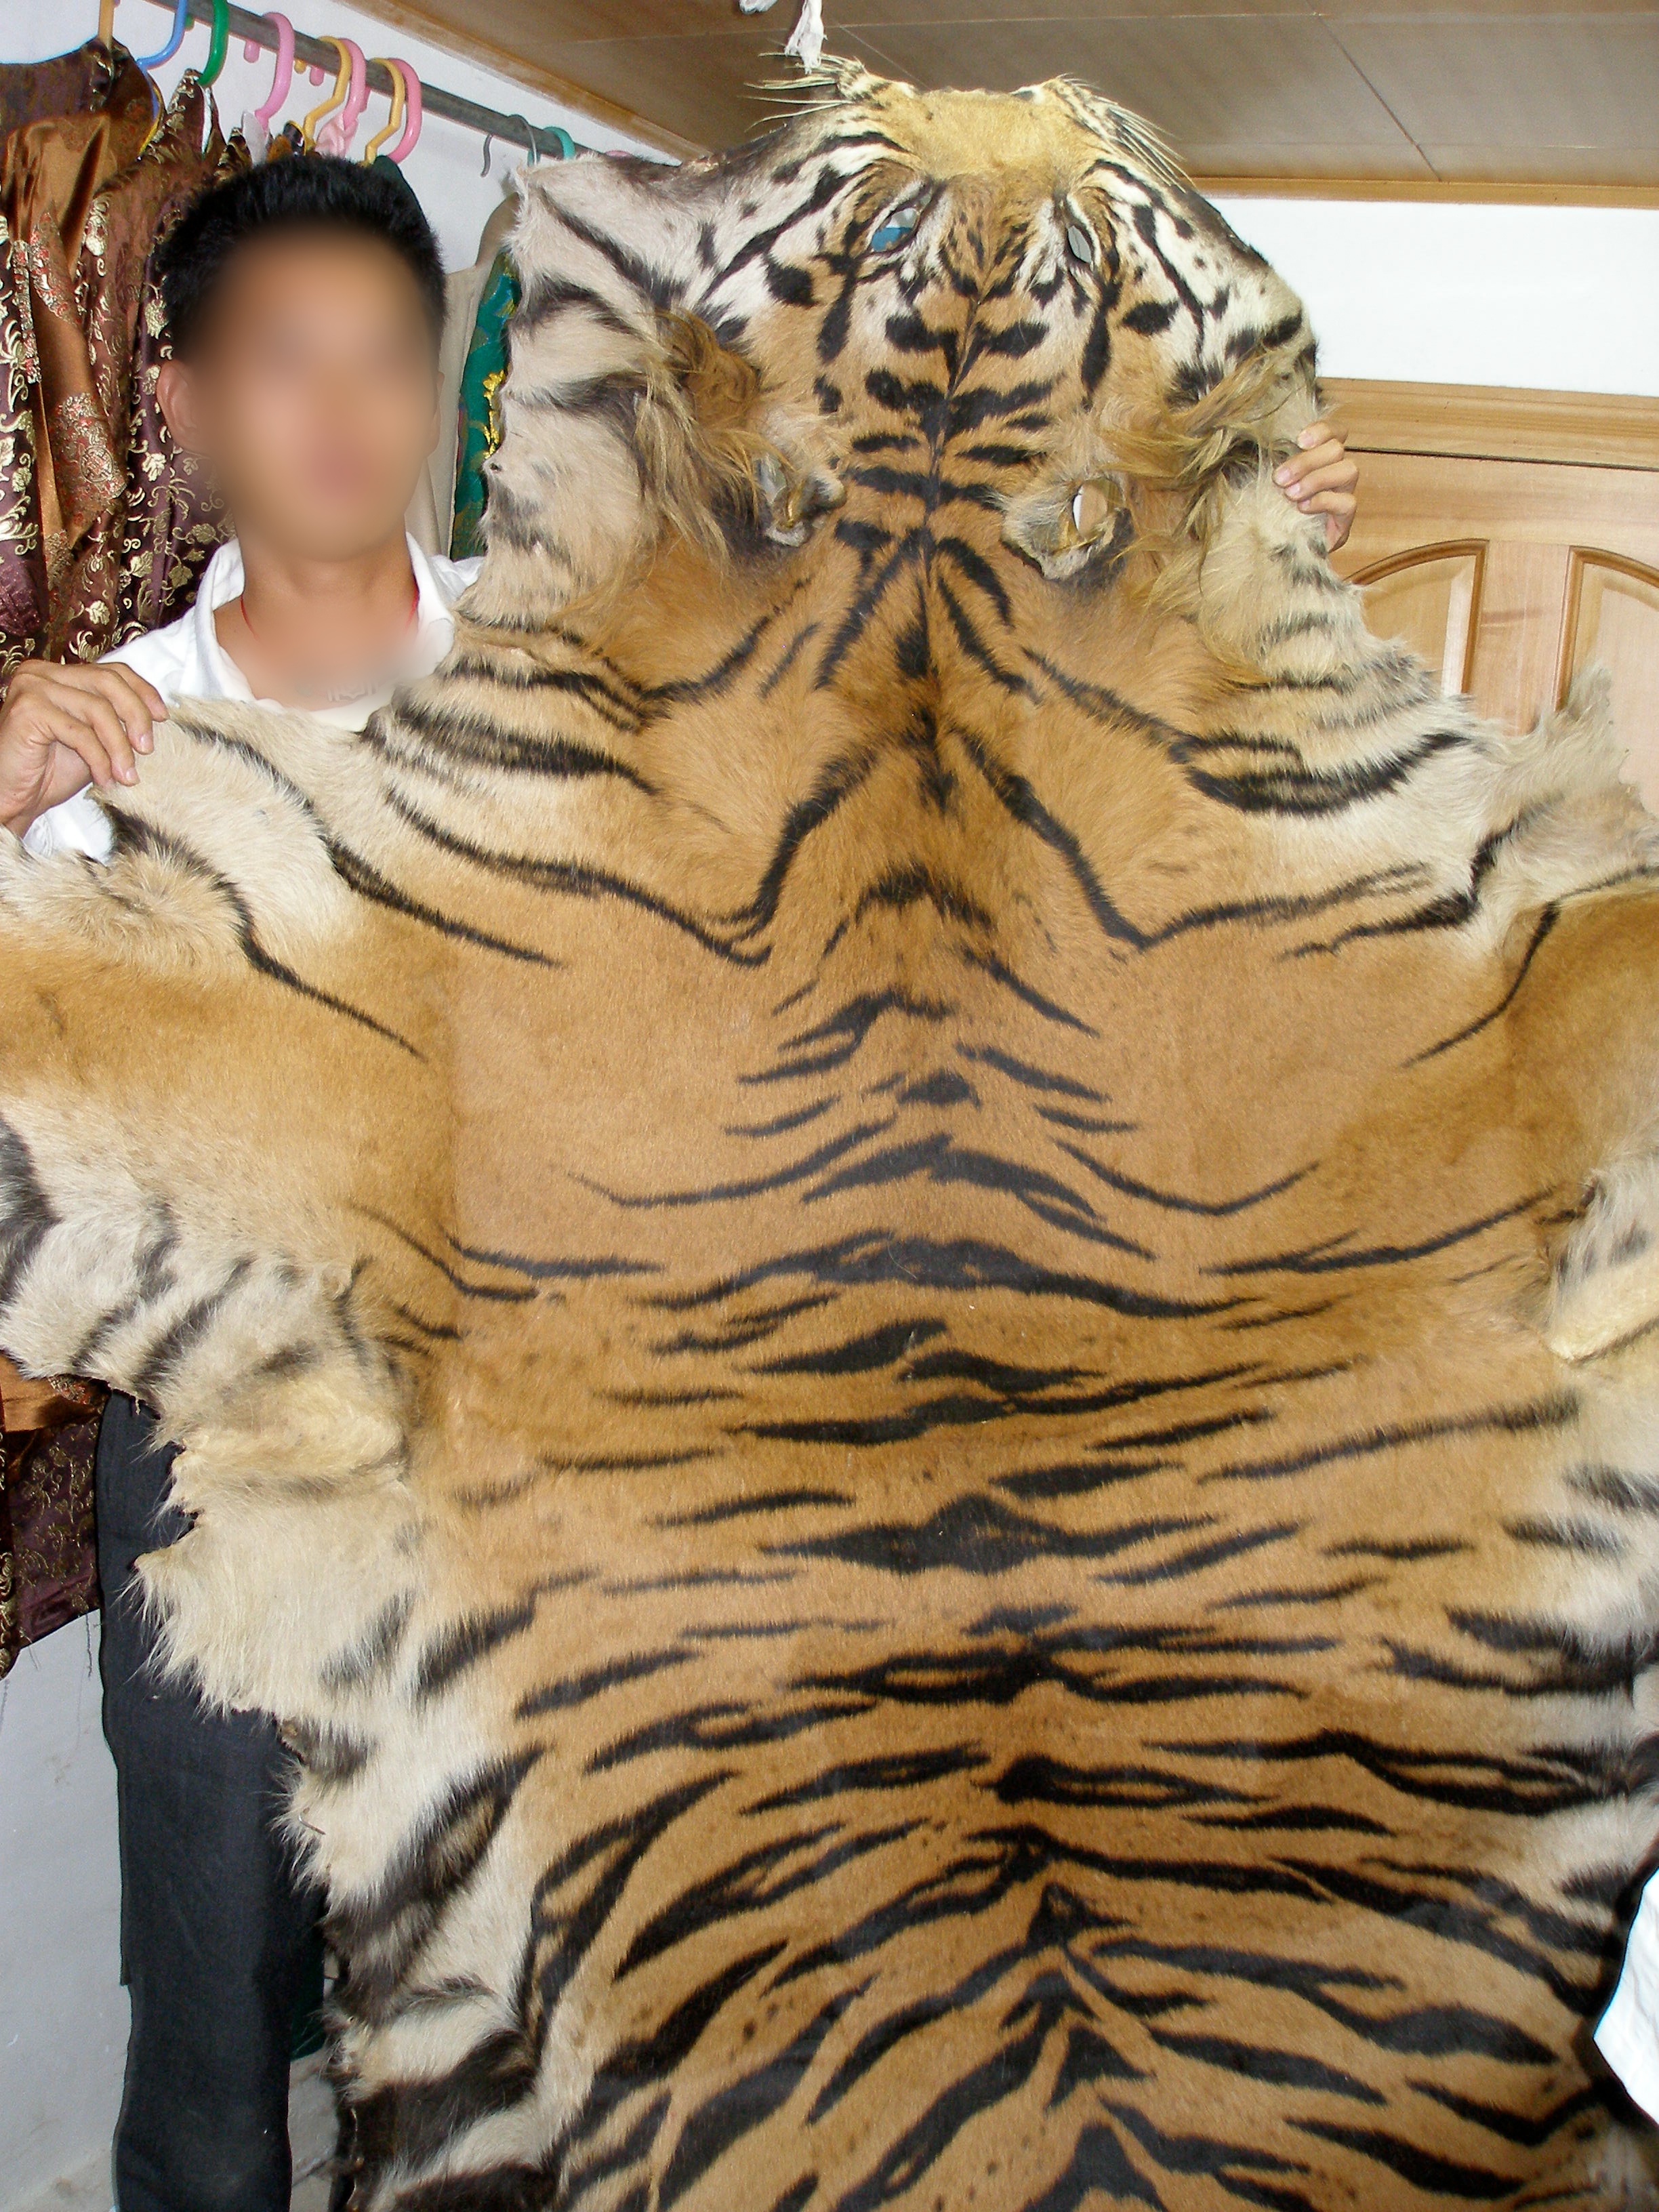 Tiger skin taken on an EIA investigation. Copyright EIA